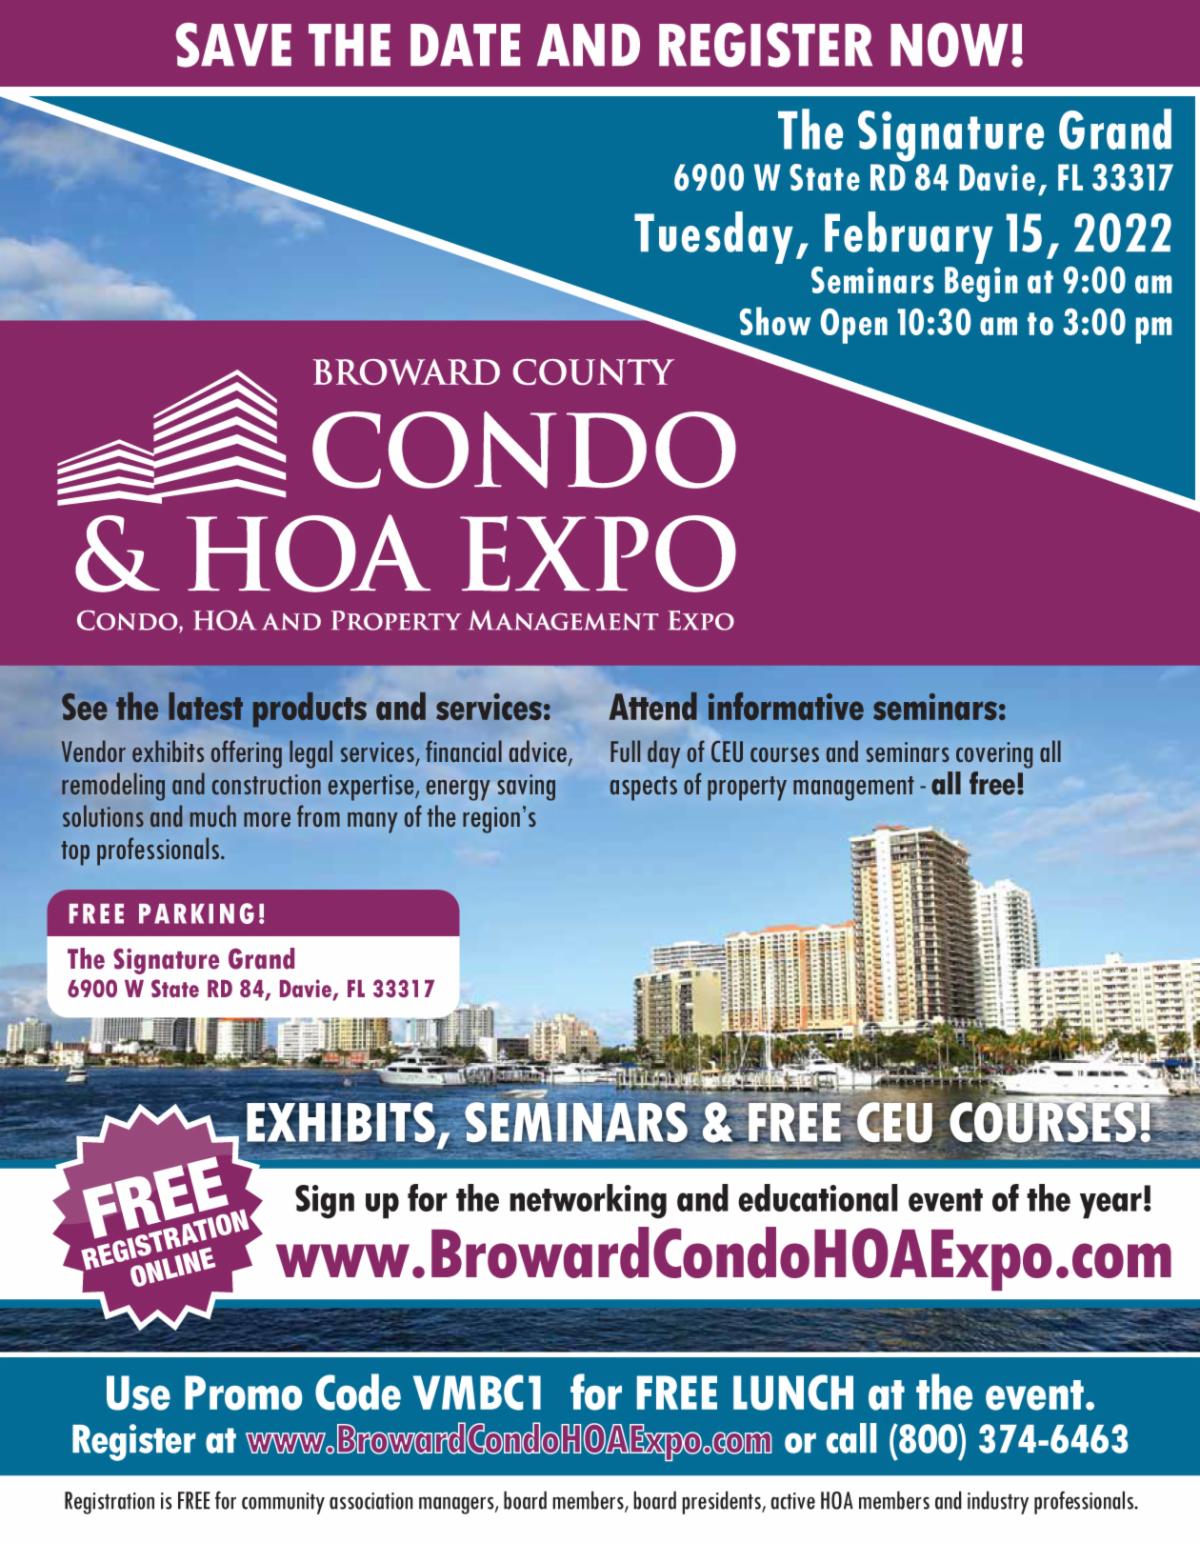 The Broward County Condo & HOA Expo. February 15th at The Signature